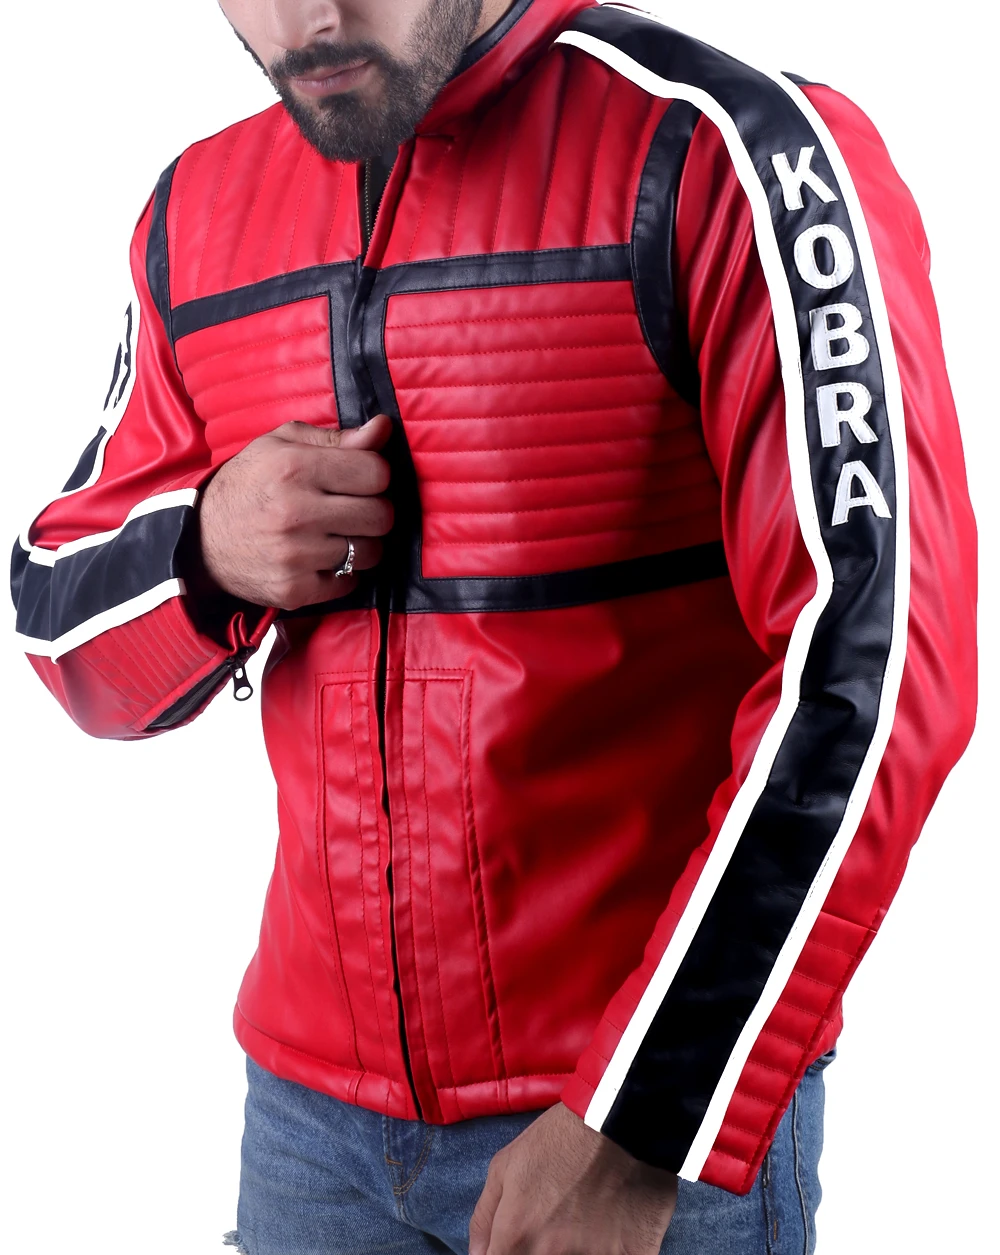 My Chemical Romance Kobra Kid Mikey Way Leather Jacket 